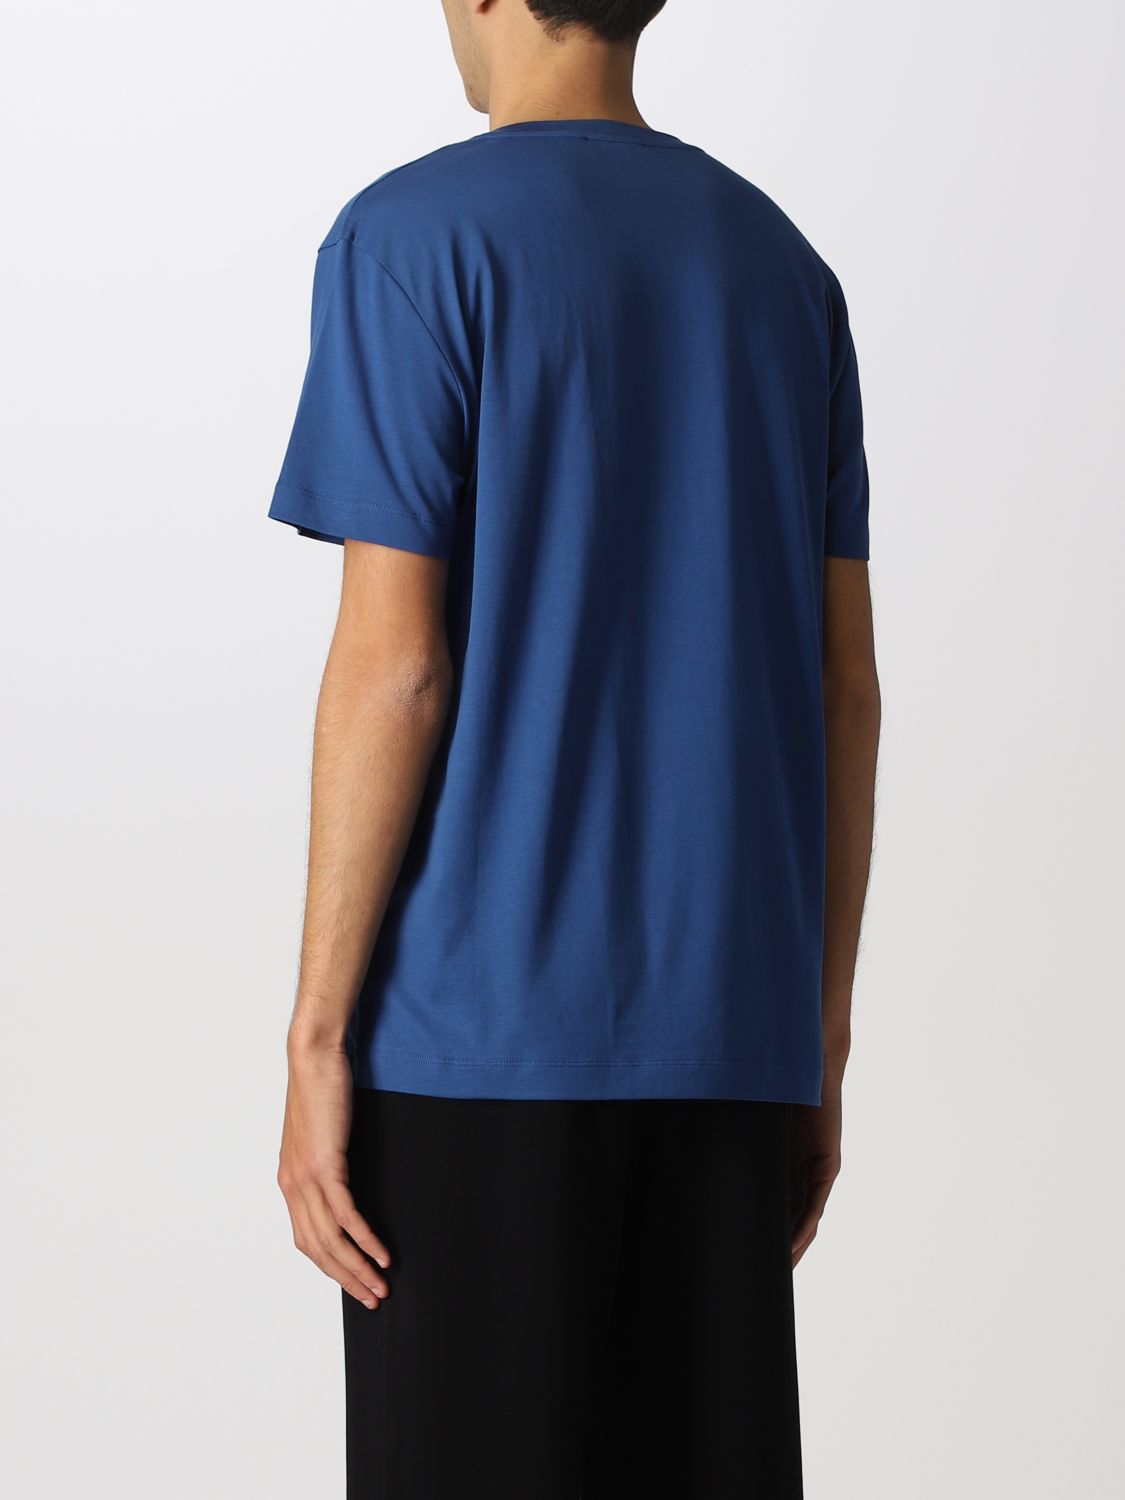 Camiseta Roberto Collina: Camiseta Roberto Collina para hombre azul oscuro 2